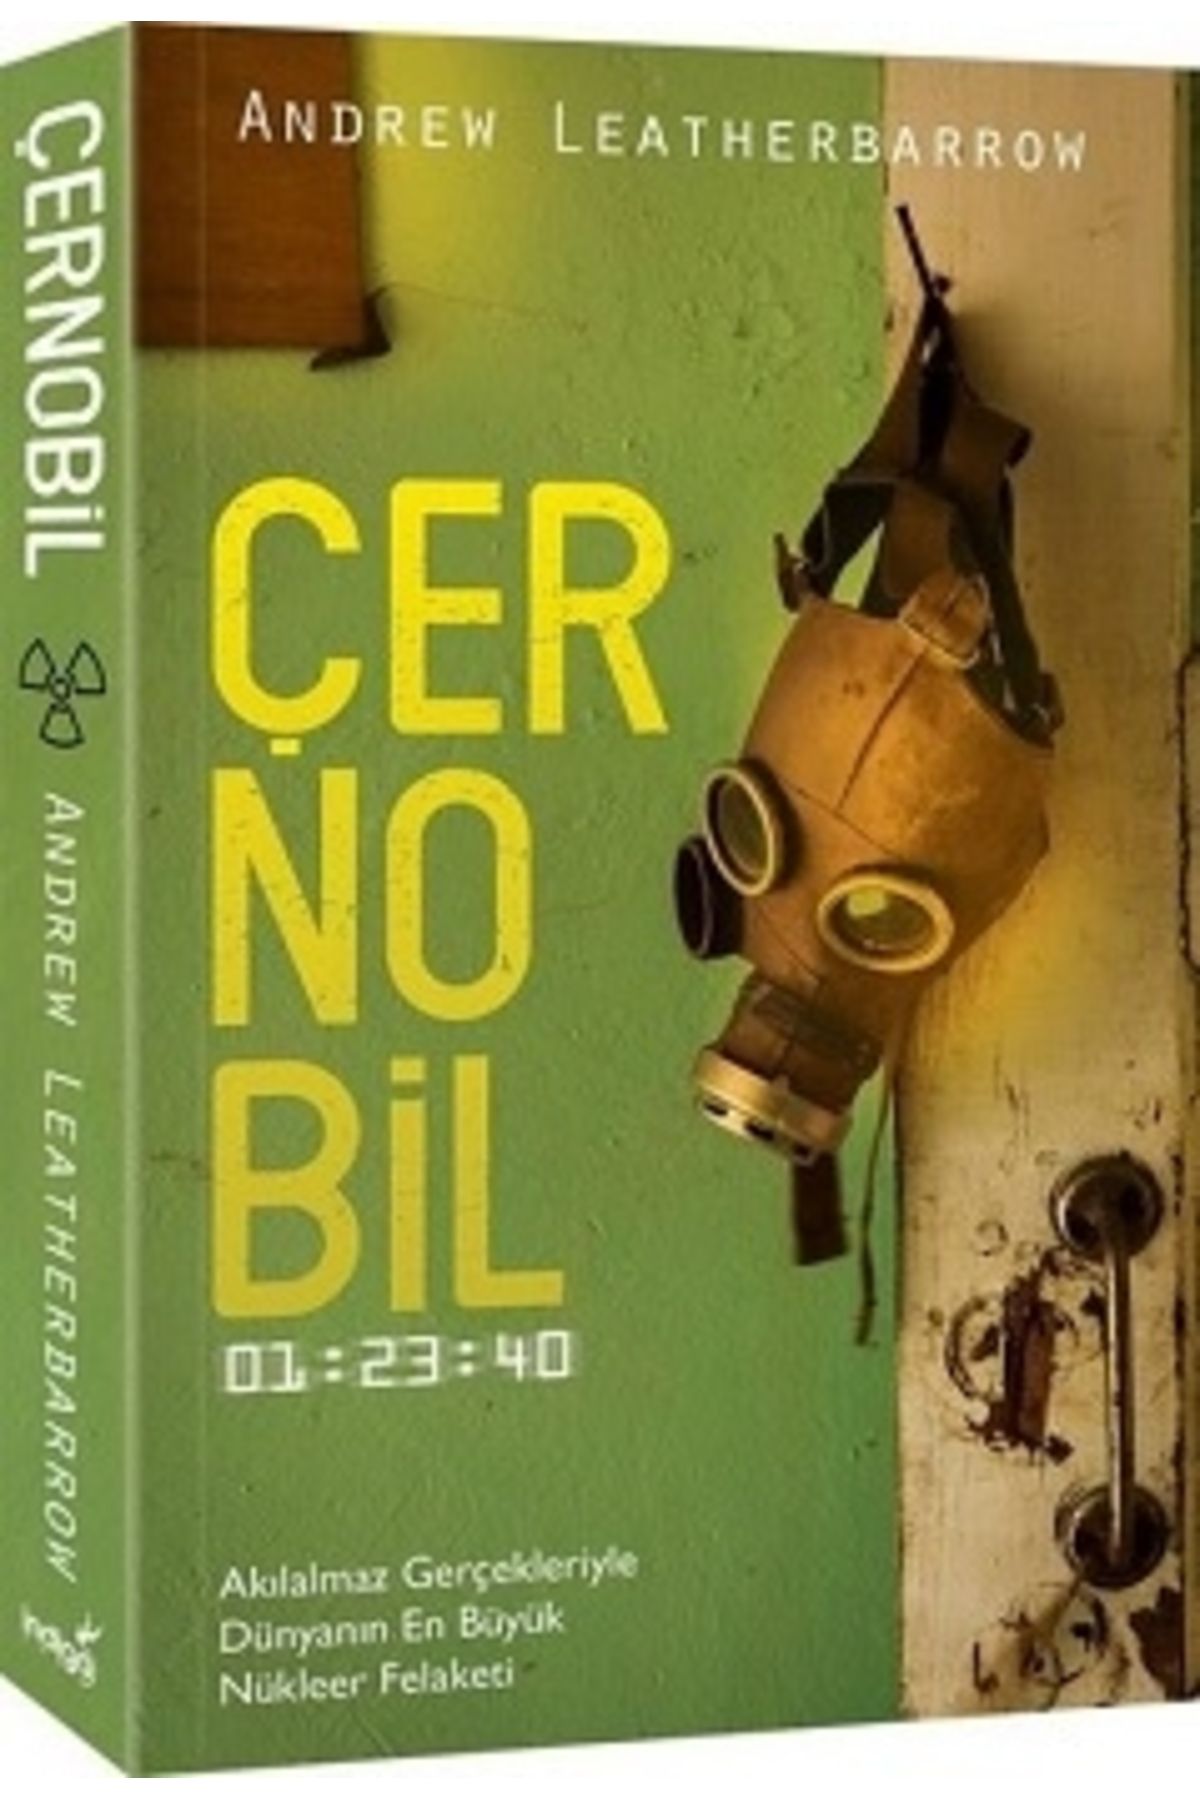 İndigo Kitap Çernobil - 01:23:40